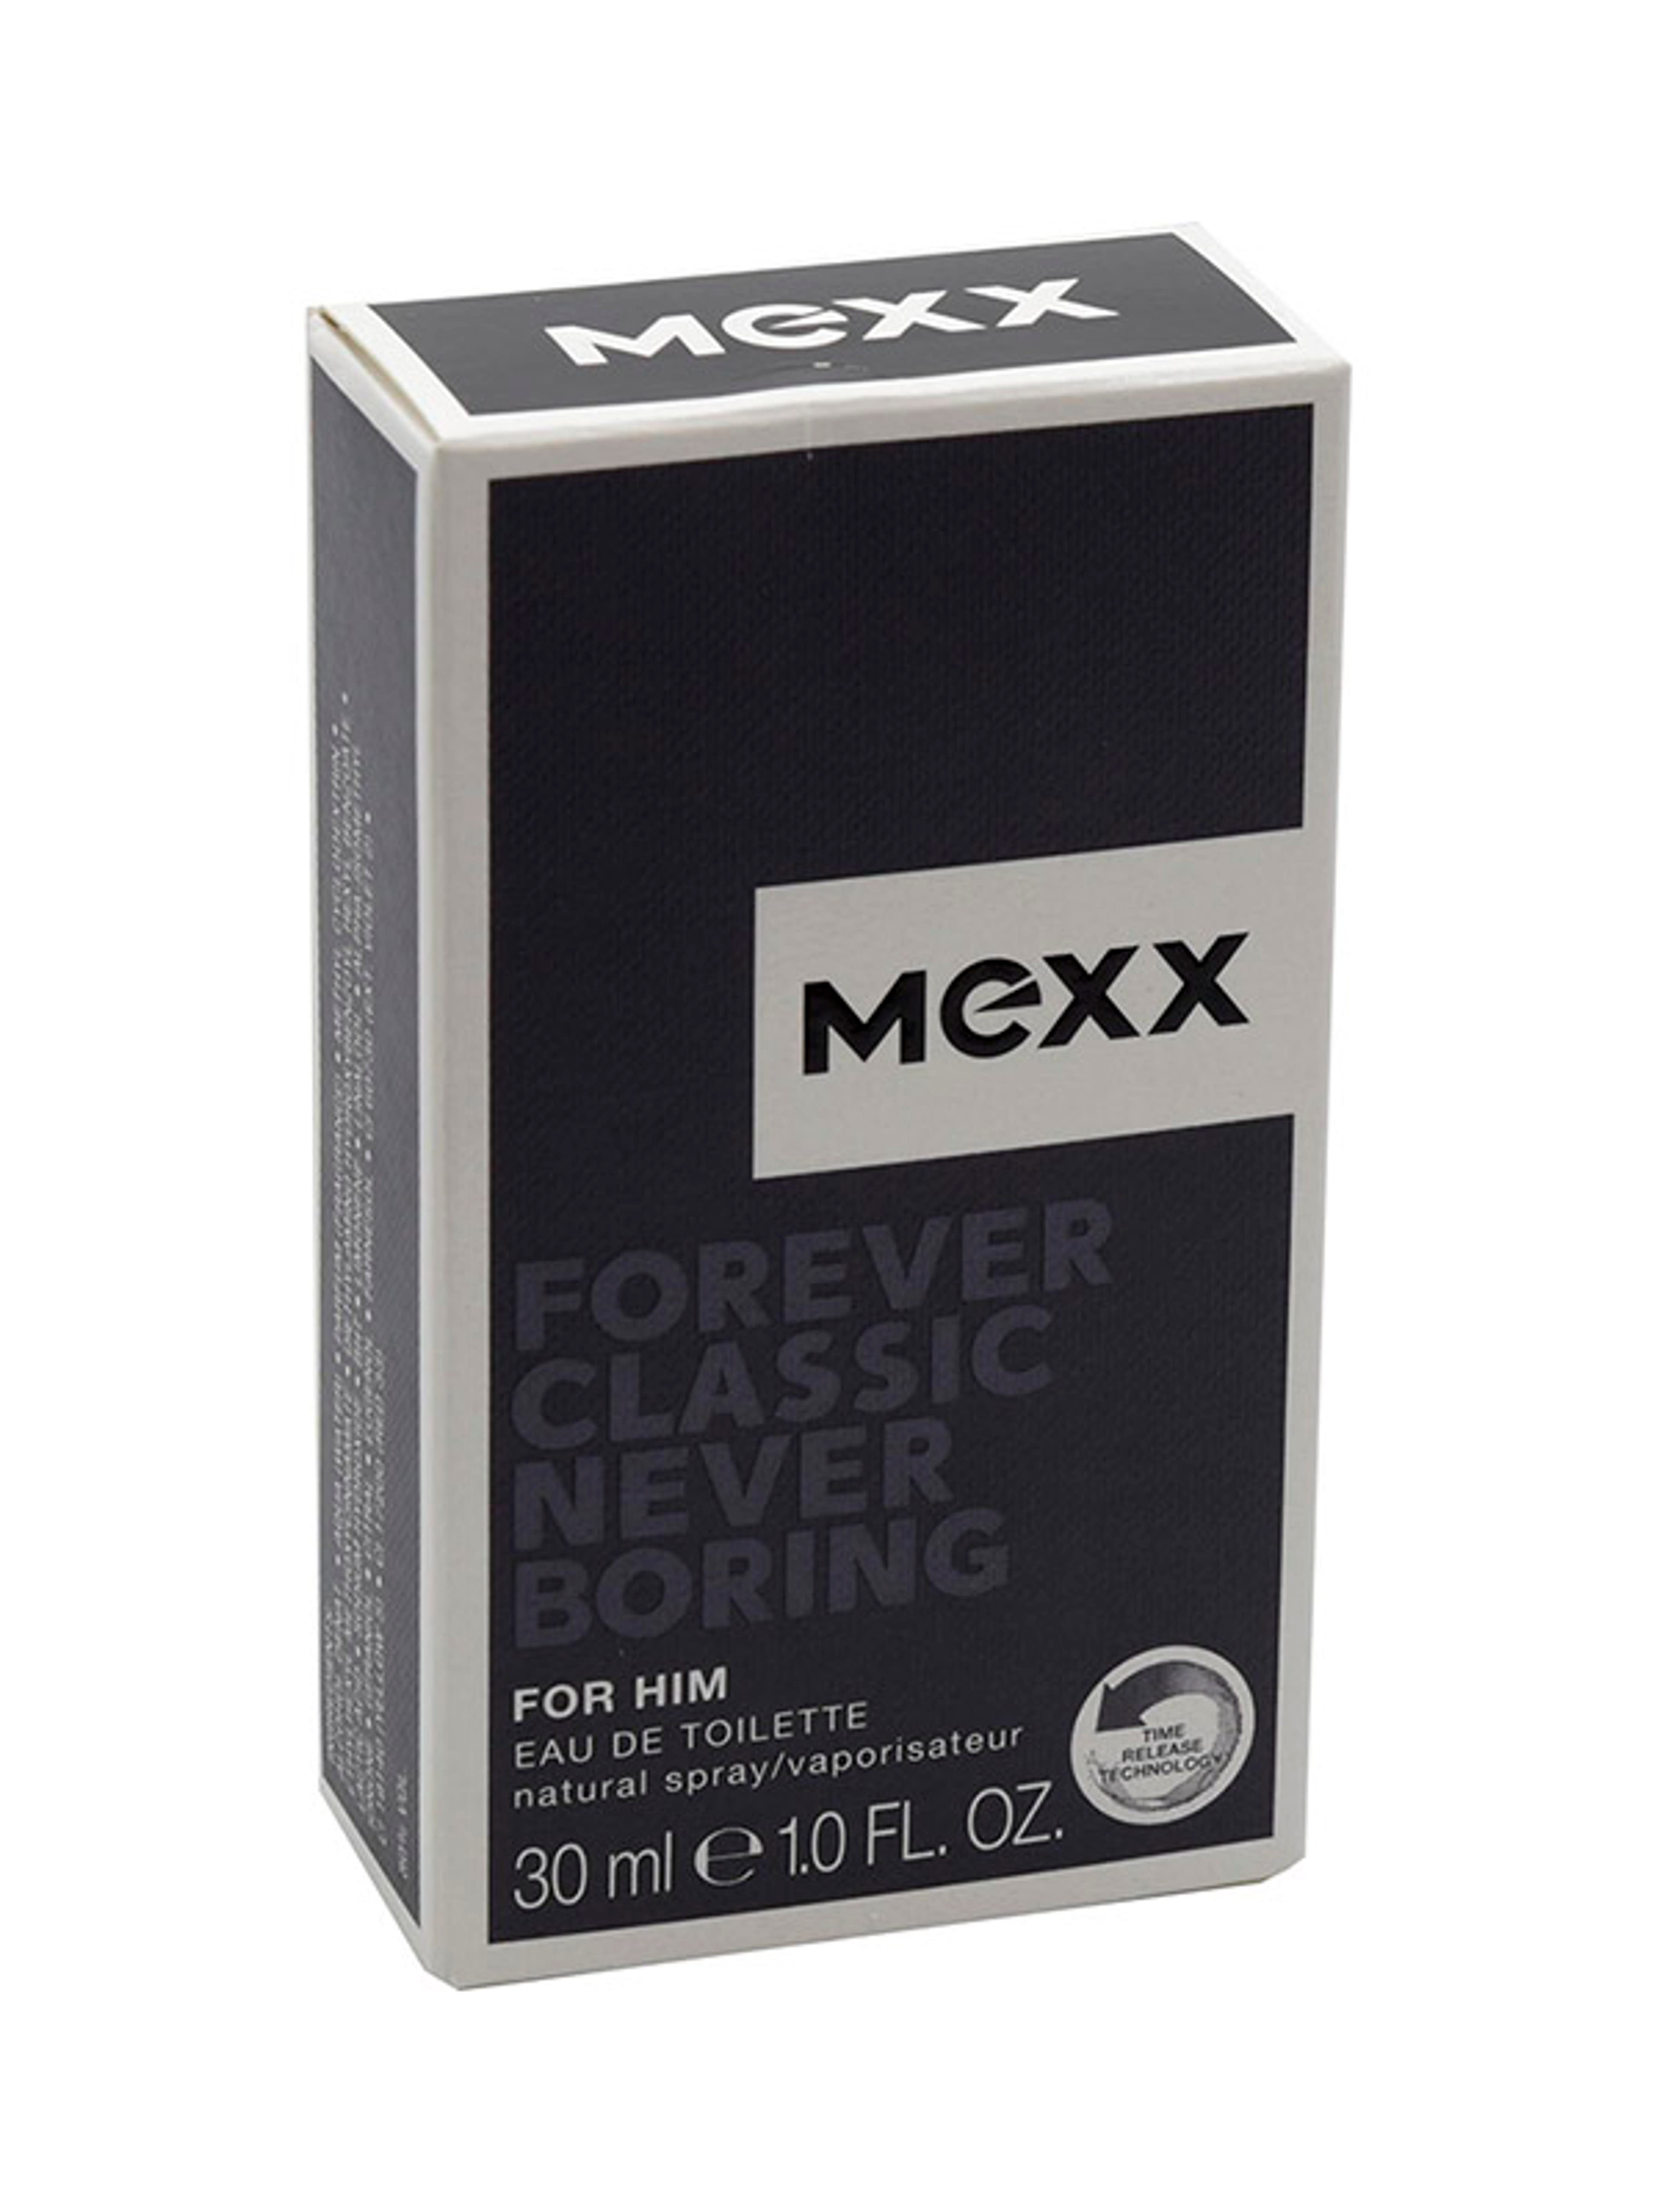 Mexx Forever Classic Never Boring férfi Eau de Toilette - 30 ml